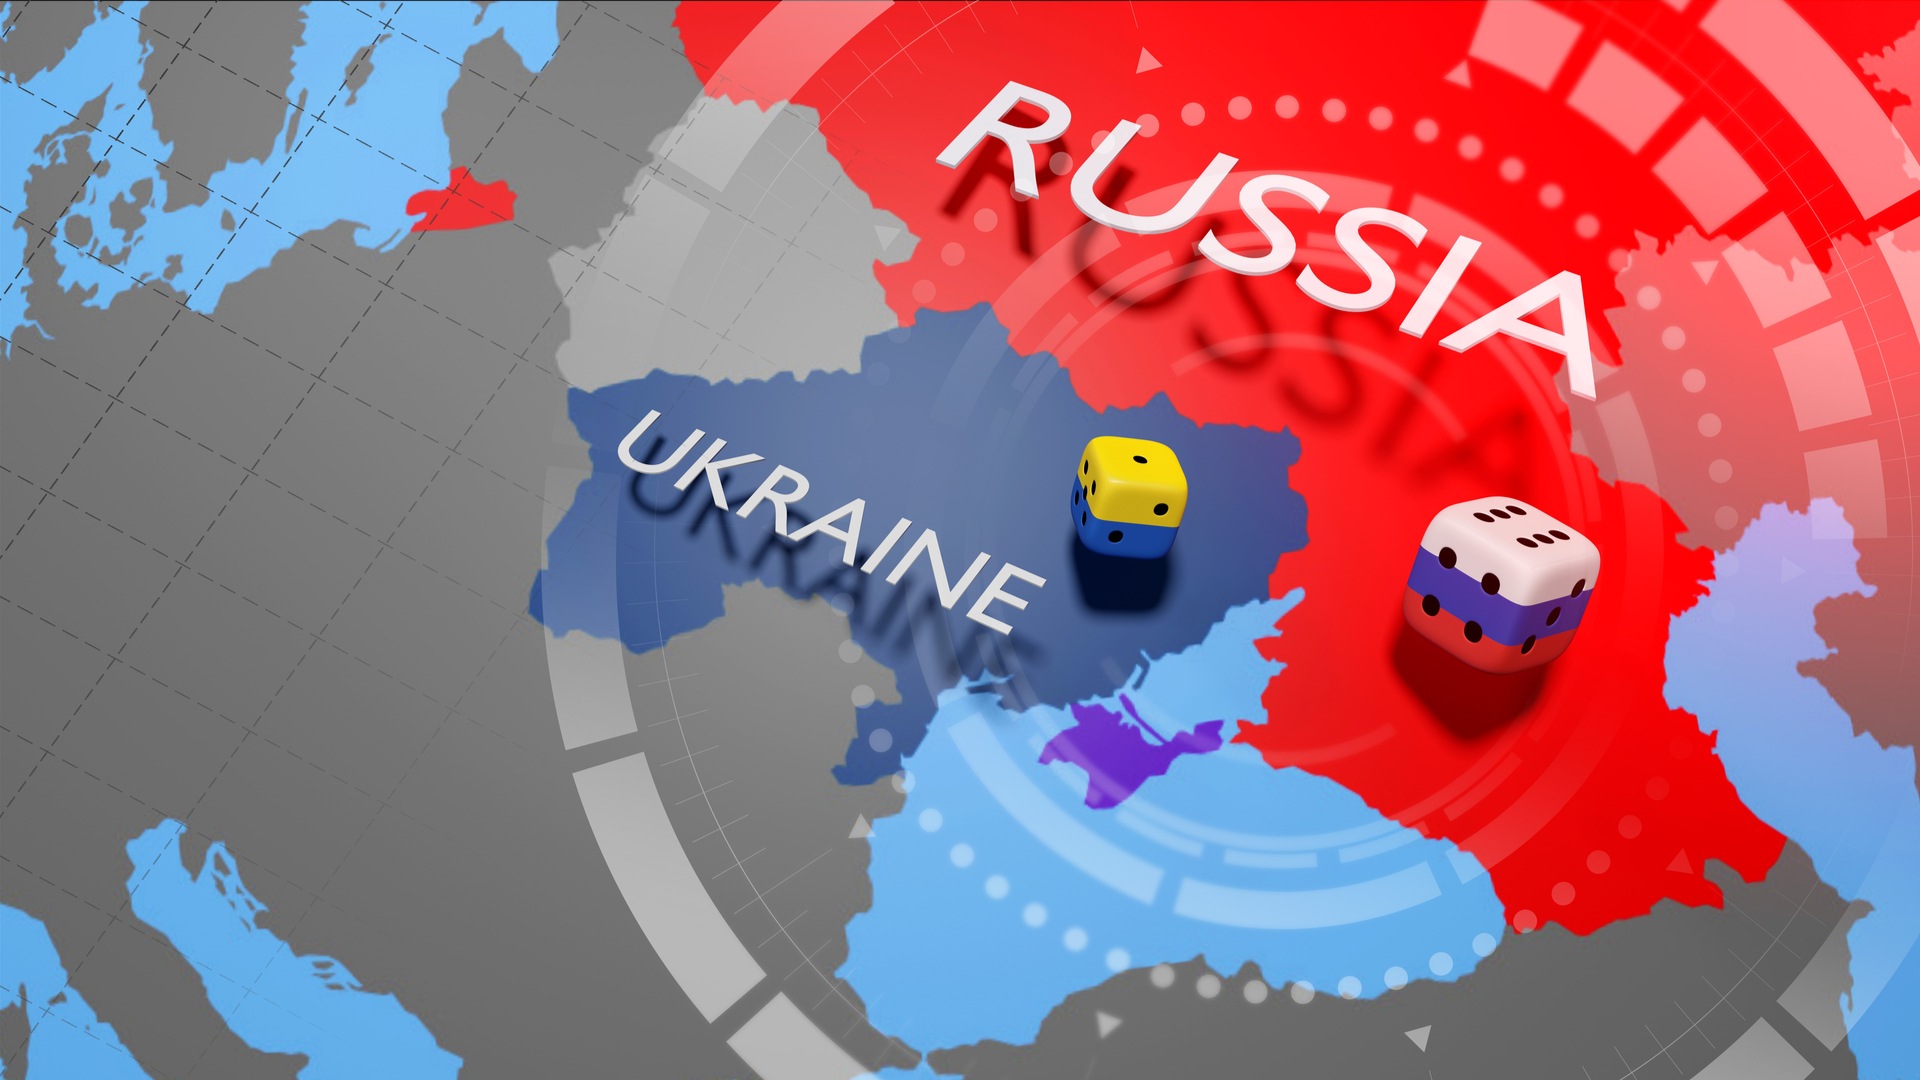 Russia-Ucraina: attacchi cyber